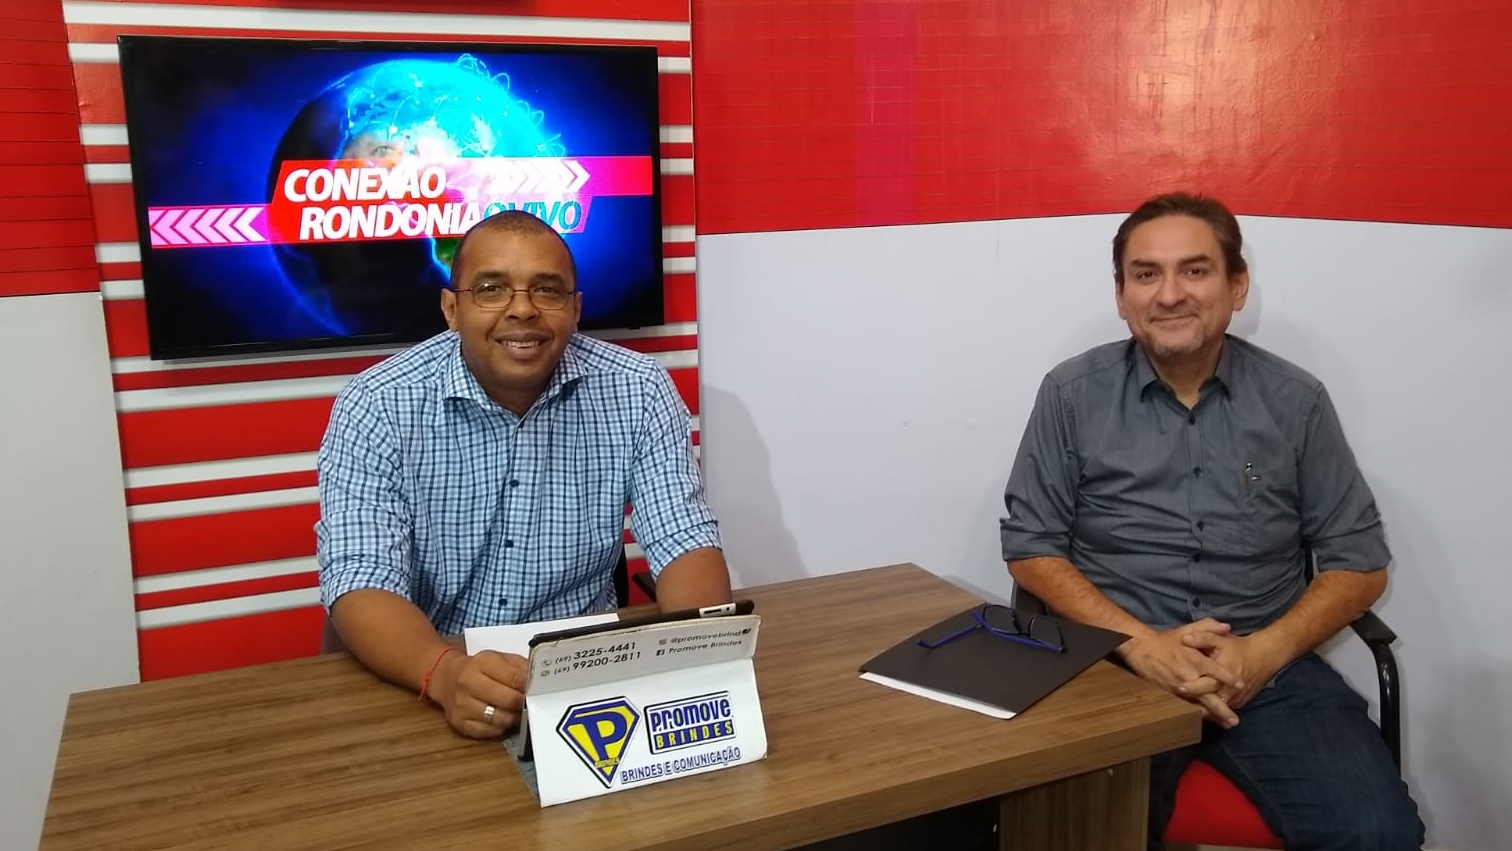 CONEXÃO RONDONIAOVIVO: Entrevista com o Presidente da Fecomécio, Raniery Araújo - REPRISE